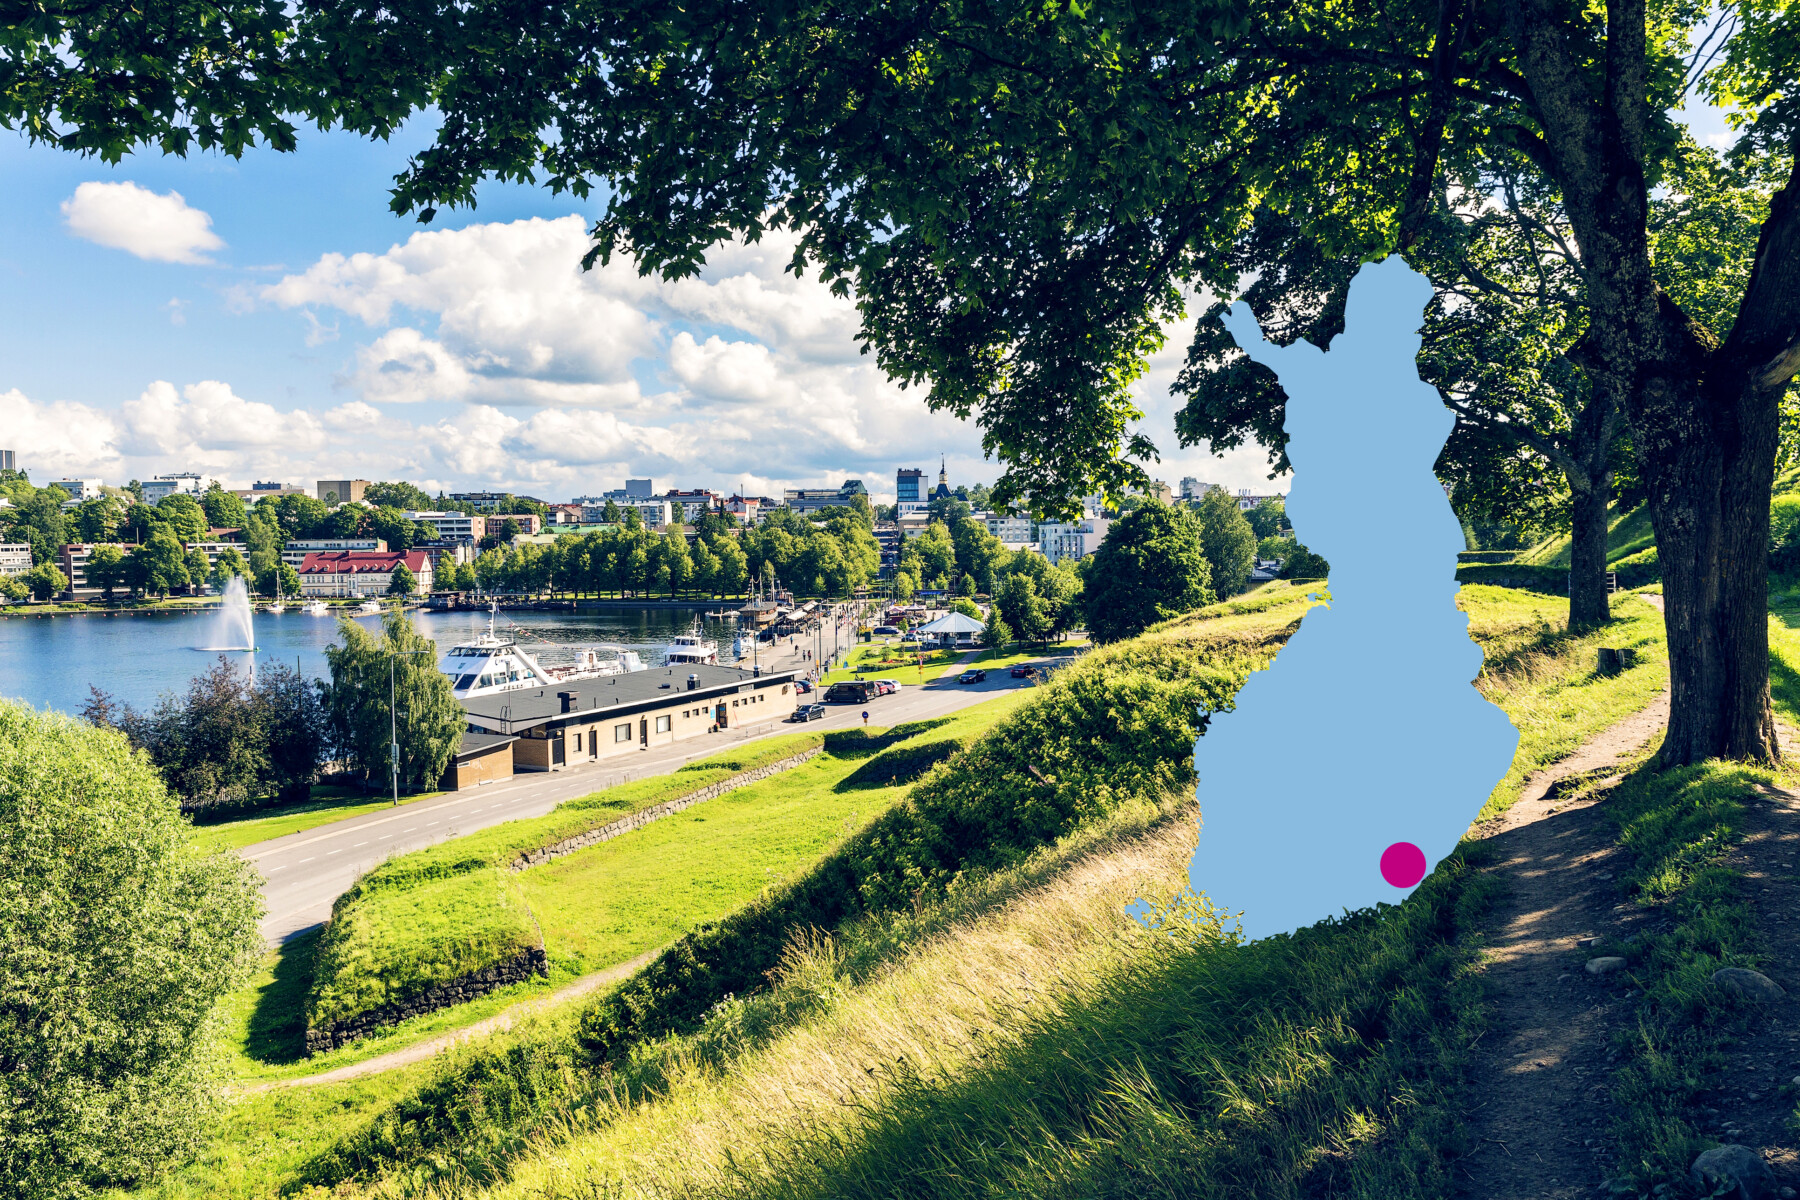 Varios edificios y un puerto en una vista desde la verde colina de un parque de Lappeenranta, una ciudad del sureste de Finlandia, situada a orillas del lago Saimaa.